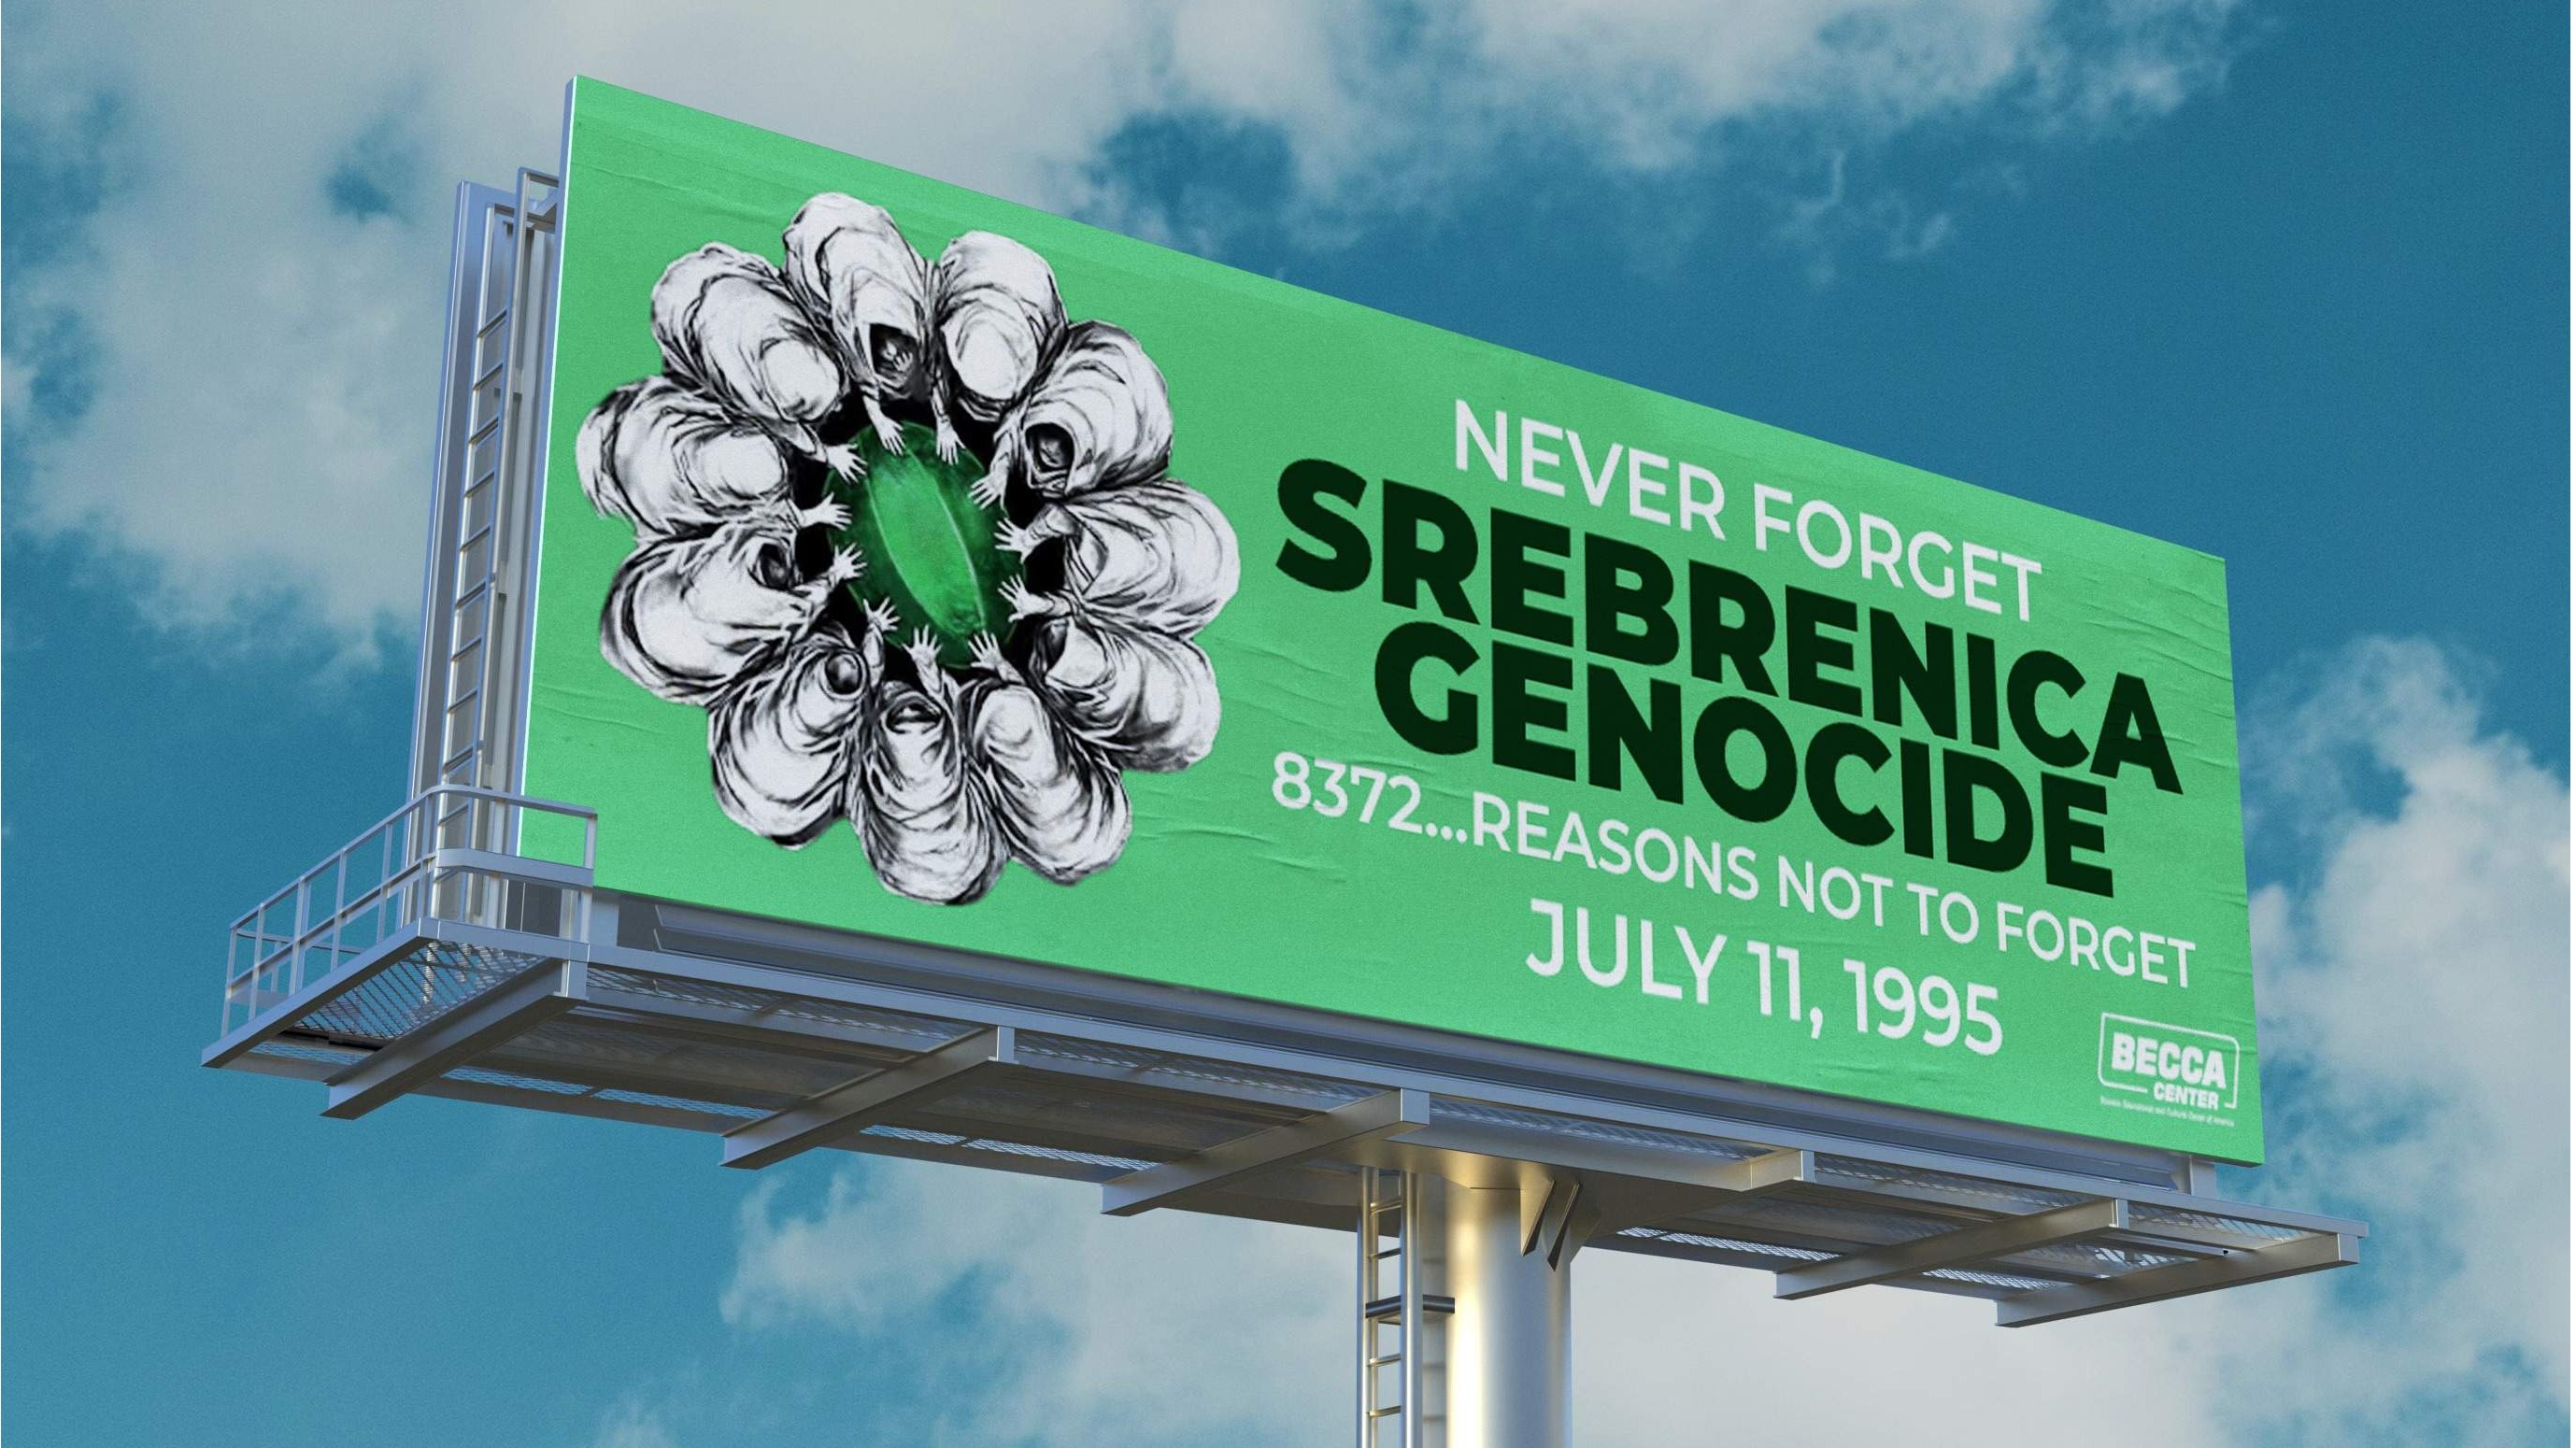 Čikago: Postavljen veliki bilbord "Never Forget Srebrenica Genocide"